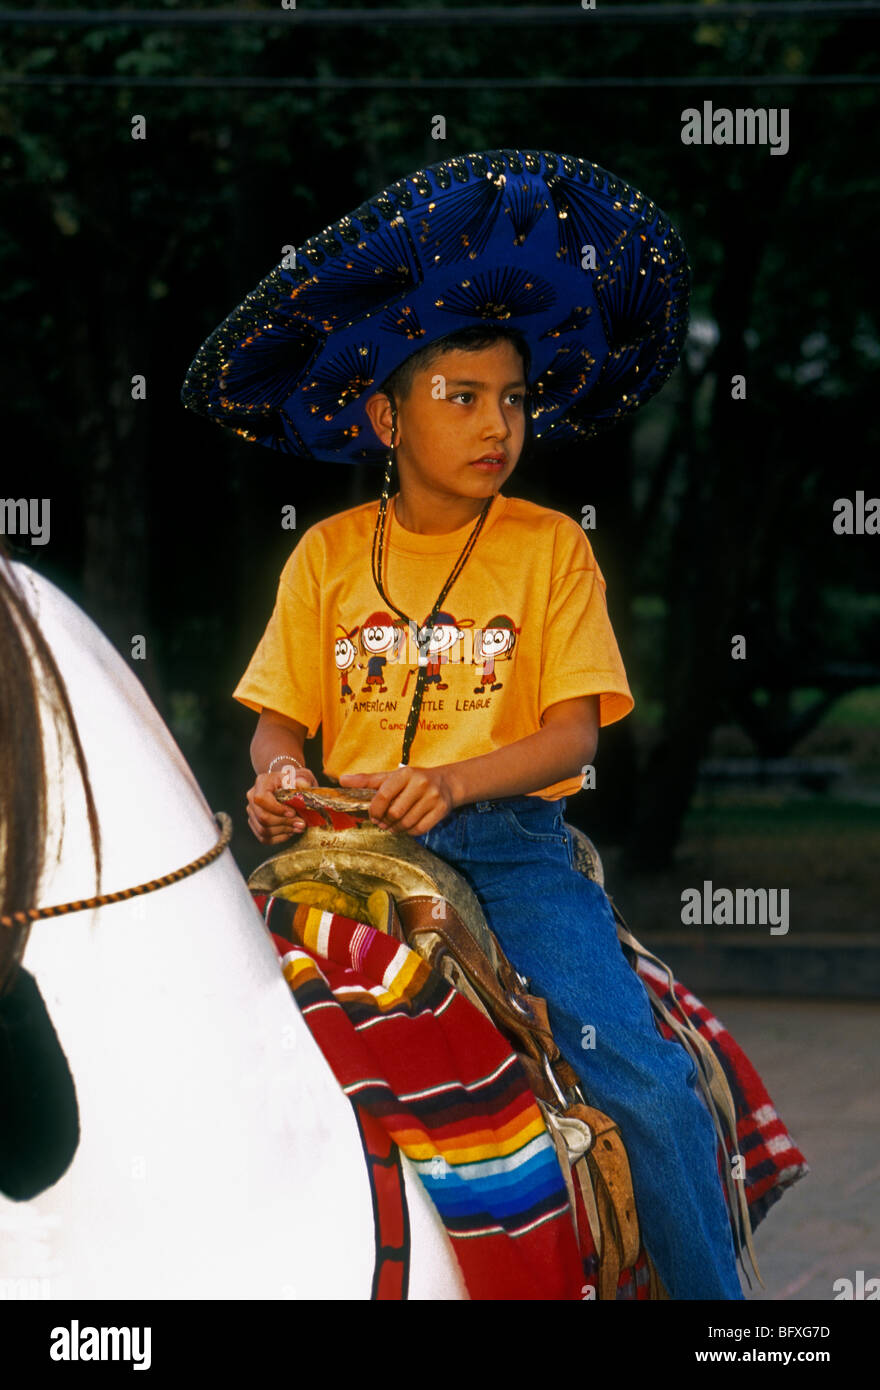 1, un Mexicain, garçon, garçon, jeune garçon, petit garçon, homme, enfant, enfant, assis en selle sur cheval jouet, parc de Chapultepec, Mexico, Mexique Banque D'Images